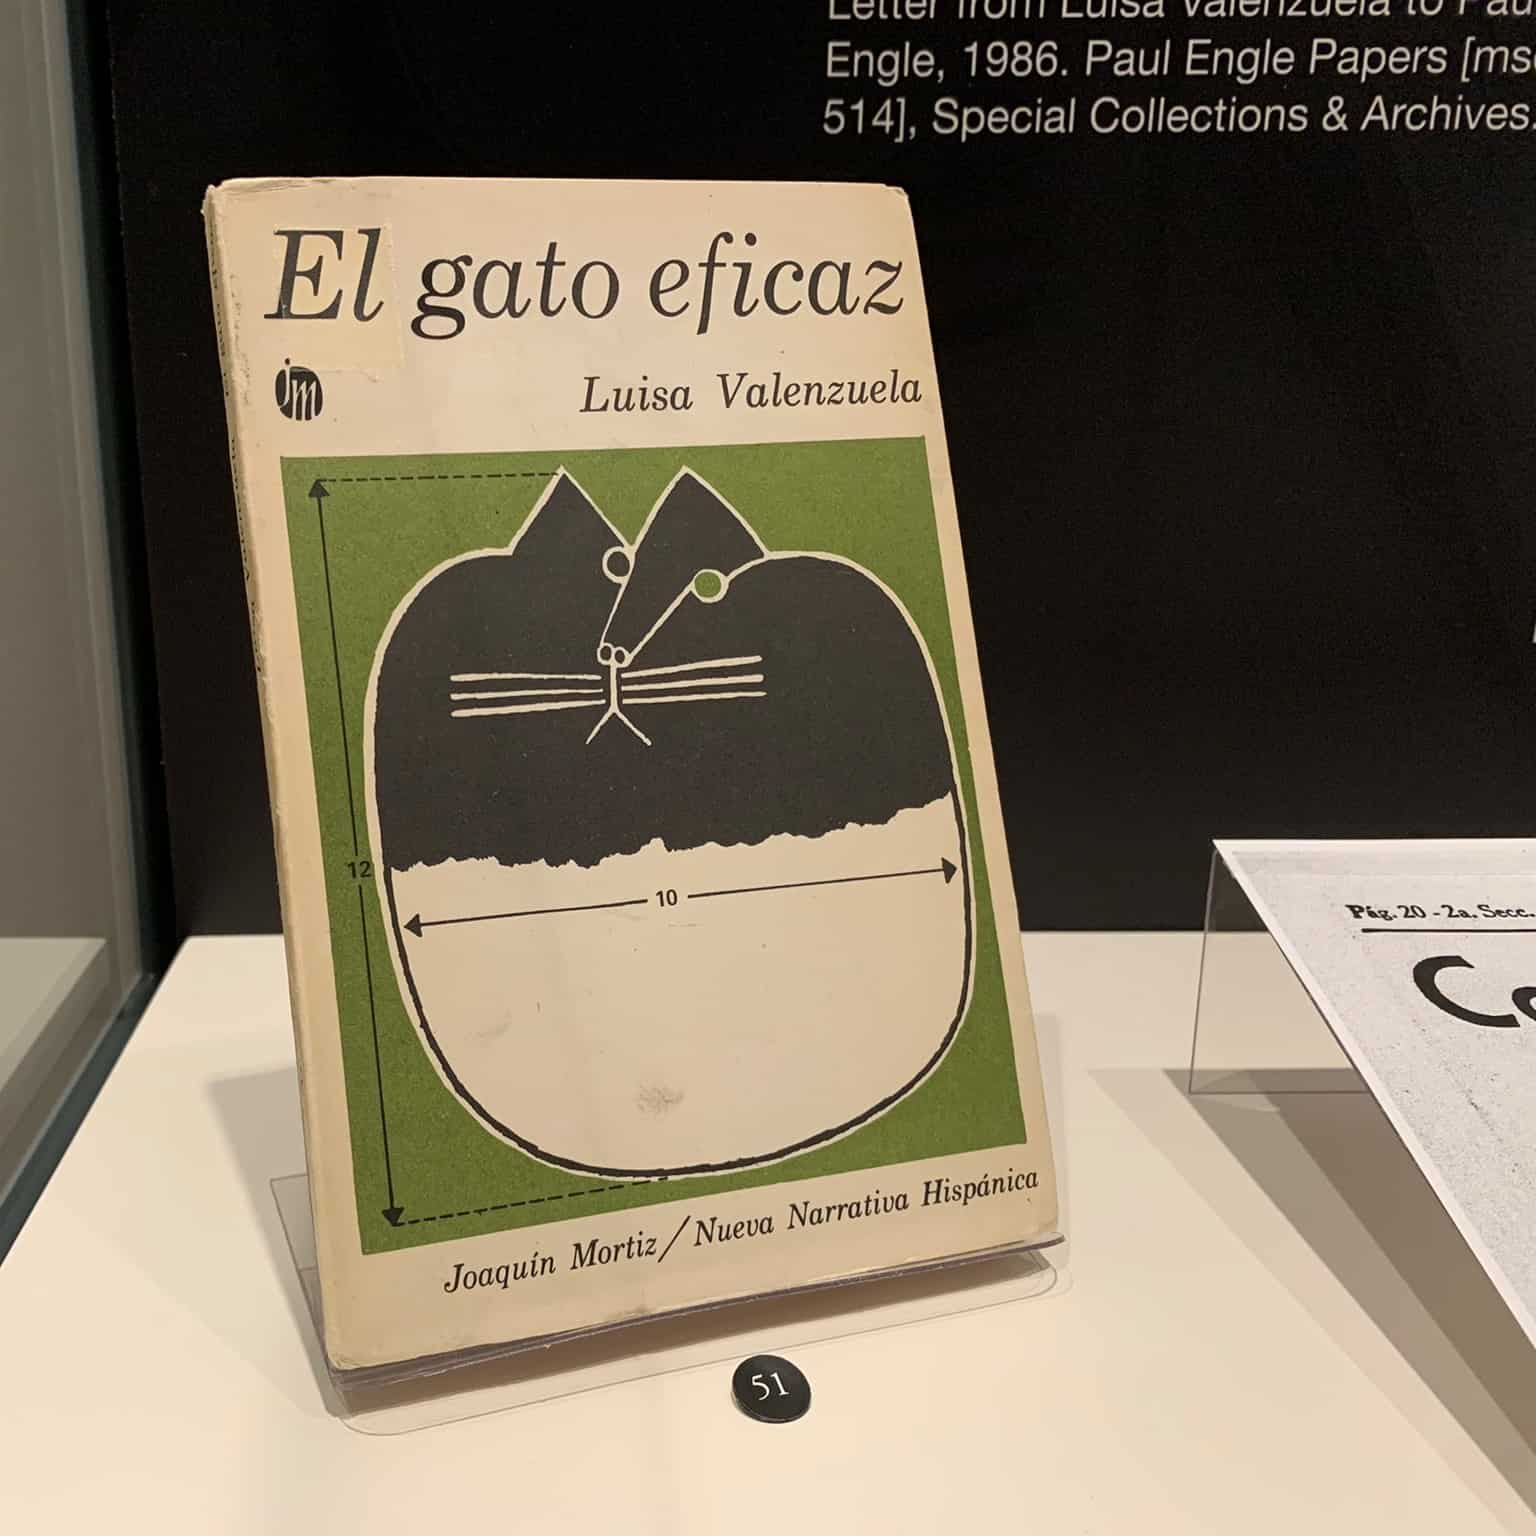 El gato eficaz book cover by Luisa Valenzuela.